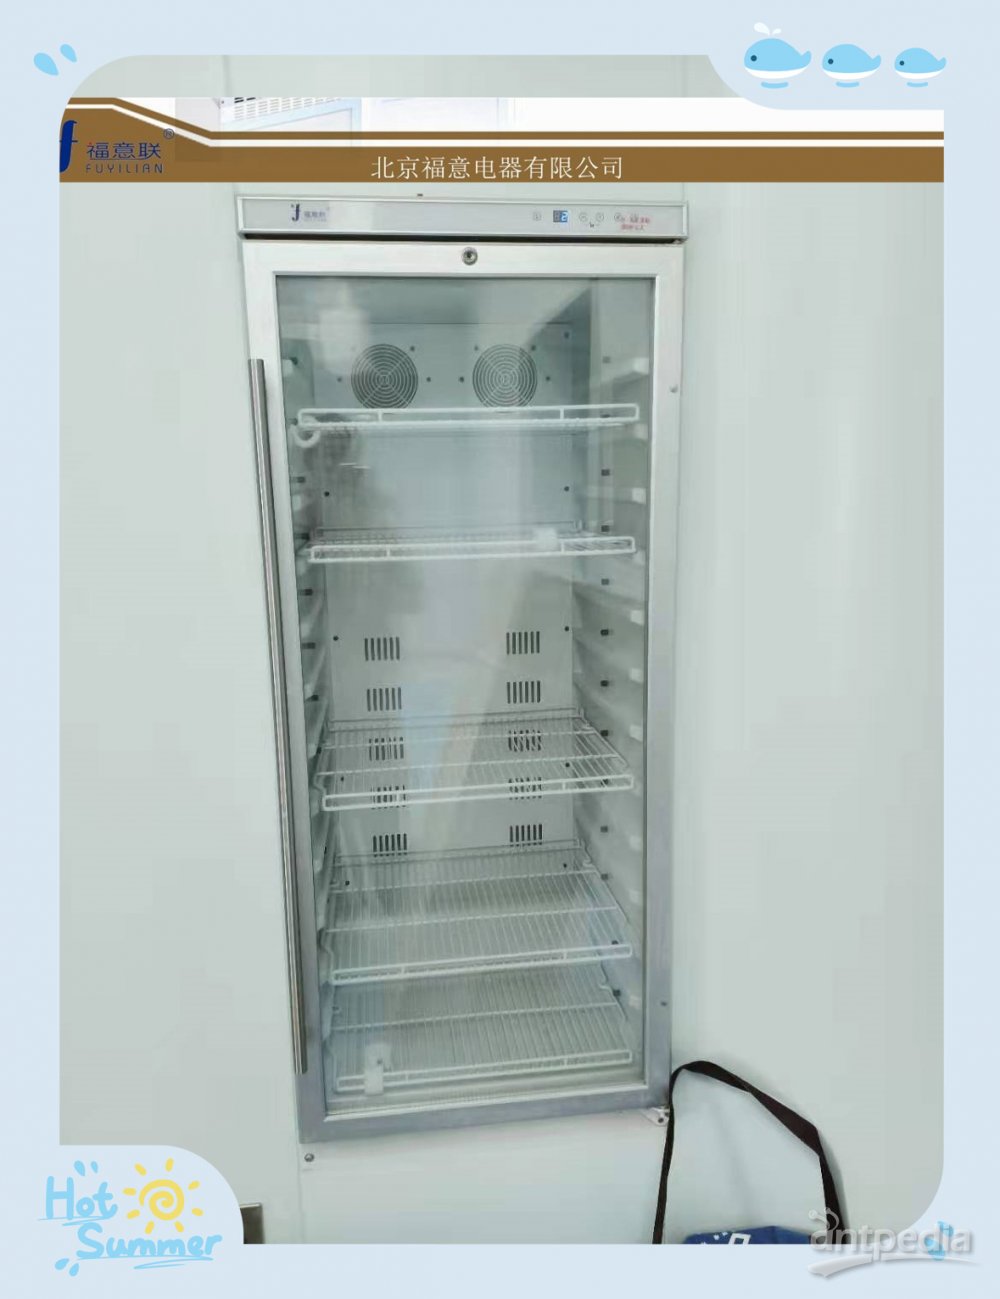 剂型:注射用浓缩液用冻干粉标本储存用冰箱FYL-YS-100E